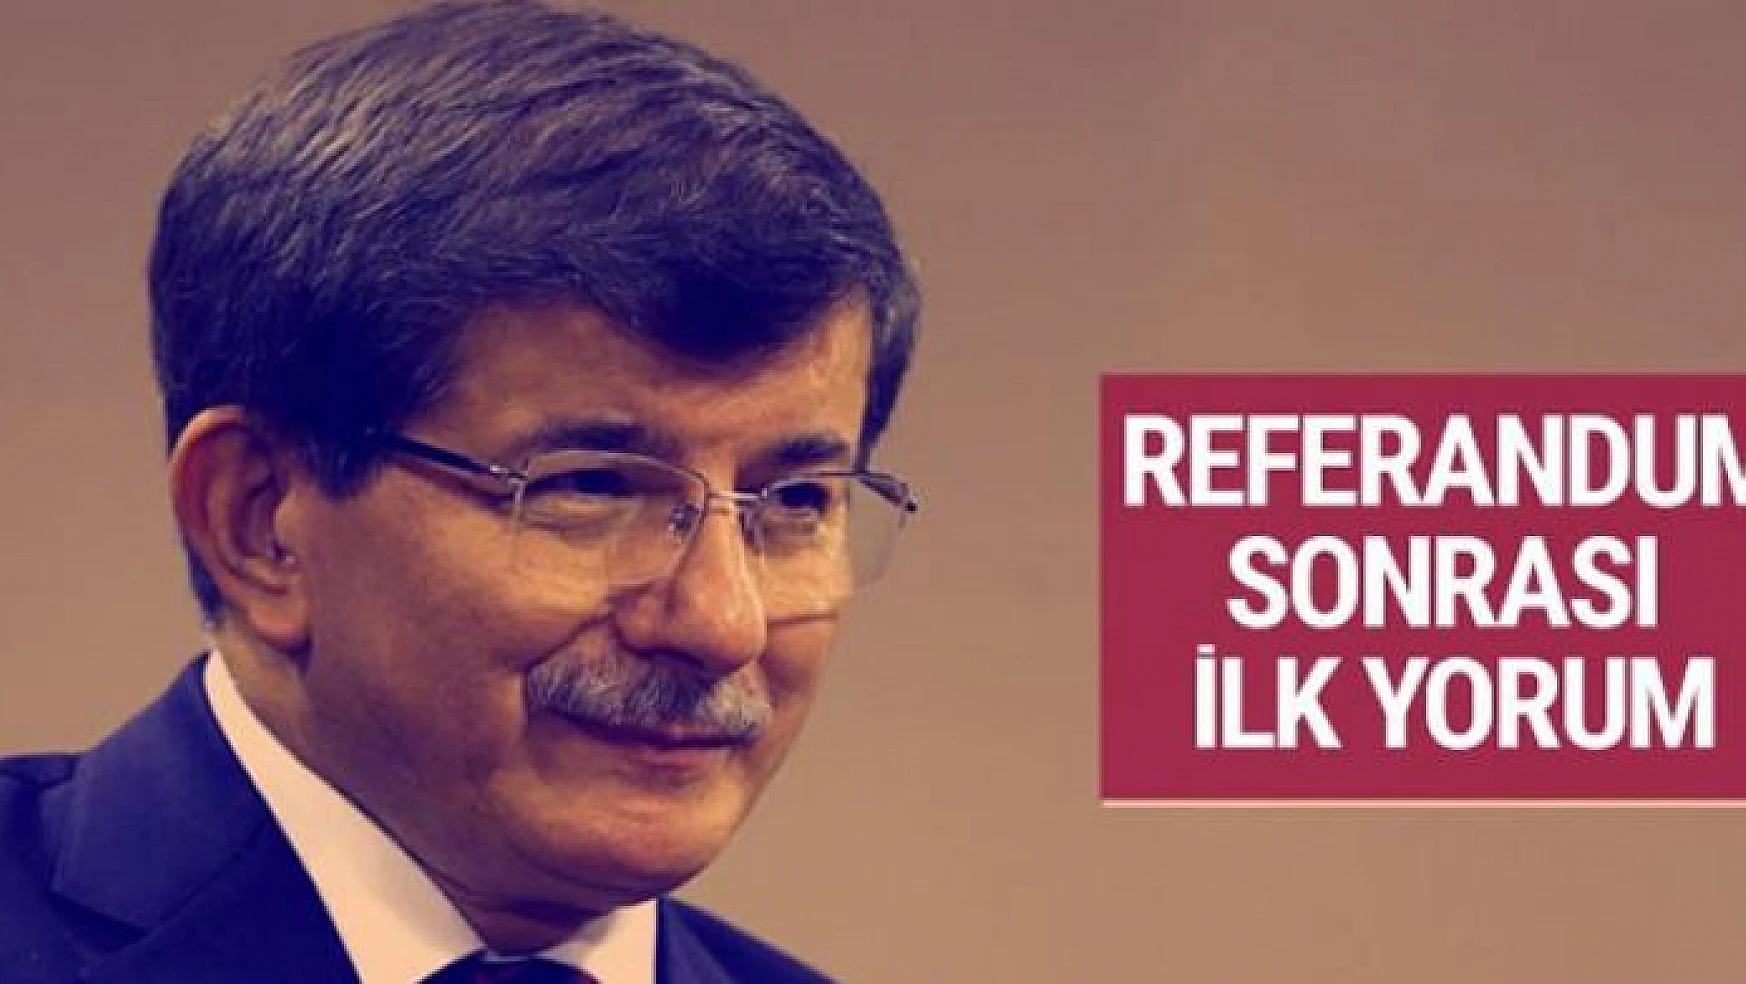 Ahmet Davutoğlu'ndan referandum sonrası ilk yorum